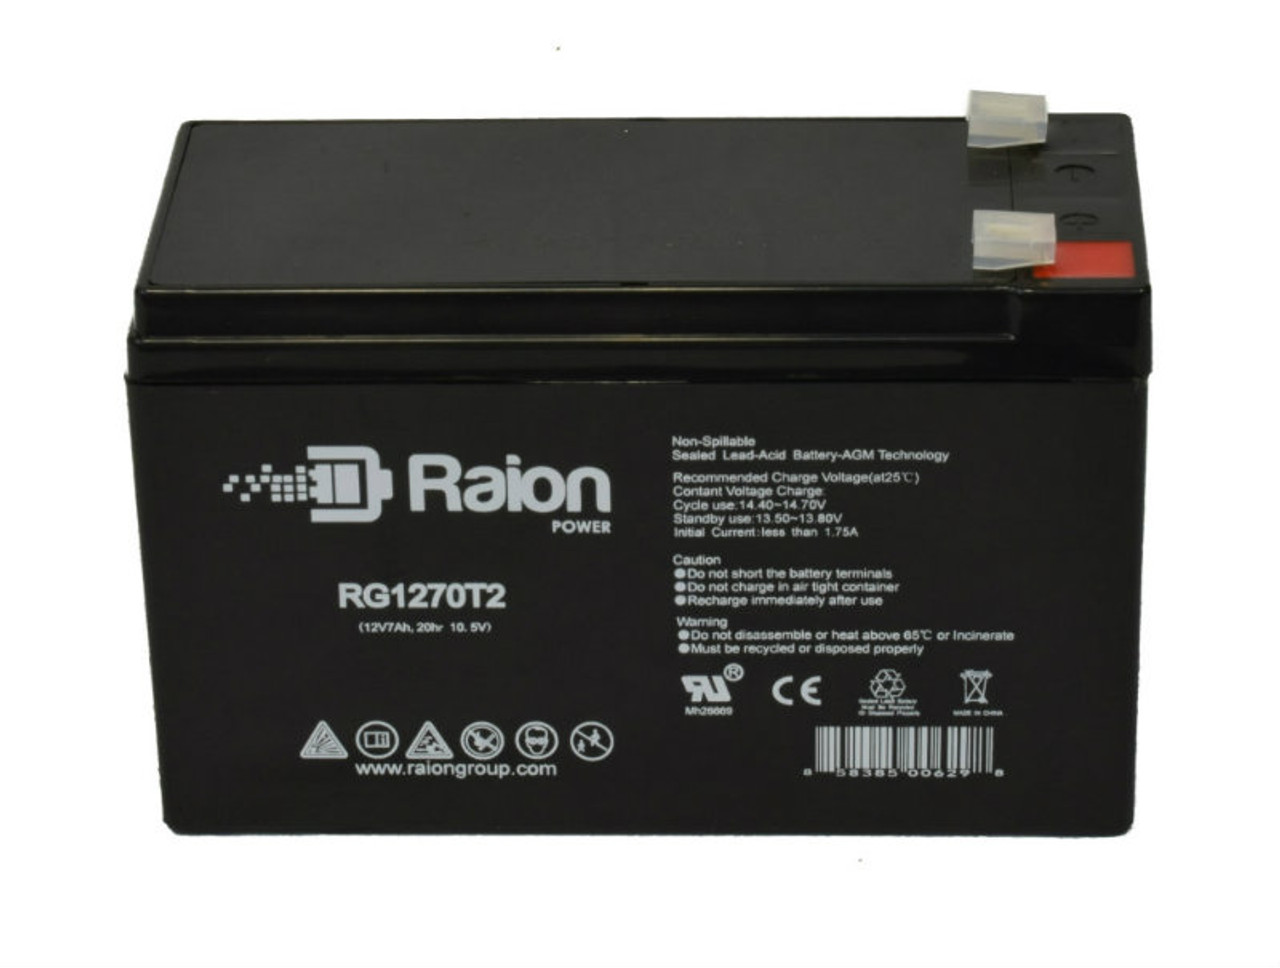 Raion Power RG1270T1 12V 7Ah Lead Acid Battery for NPP Power NP12-7Ah